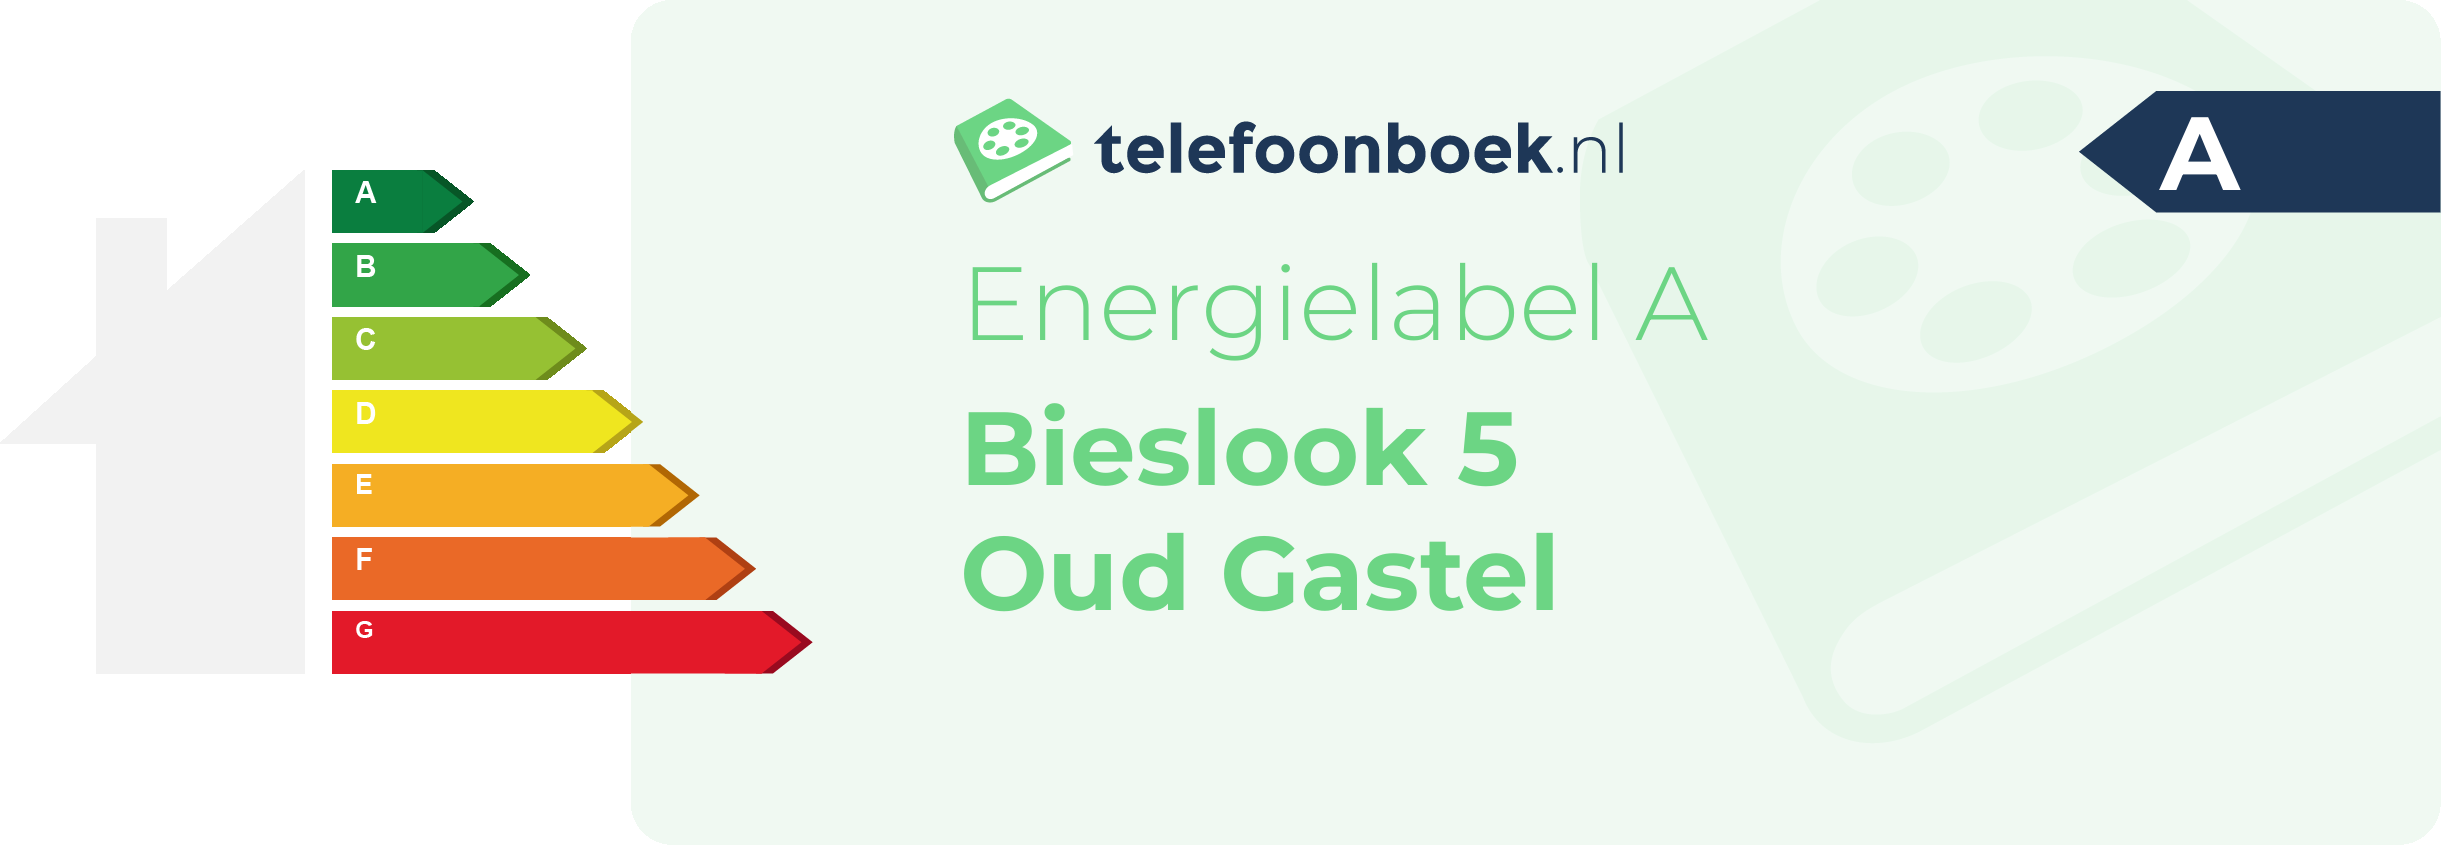 Energielabel Bieslook 5 Oud Gastel